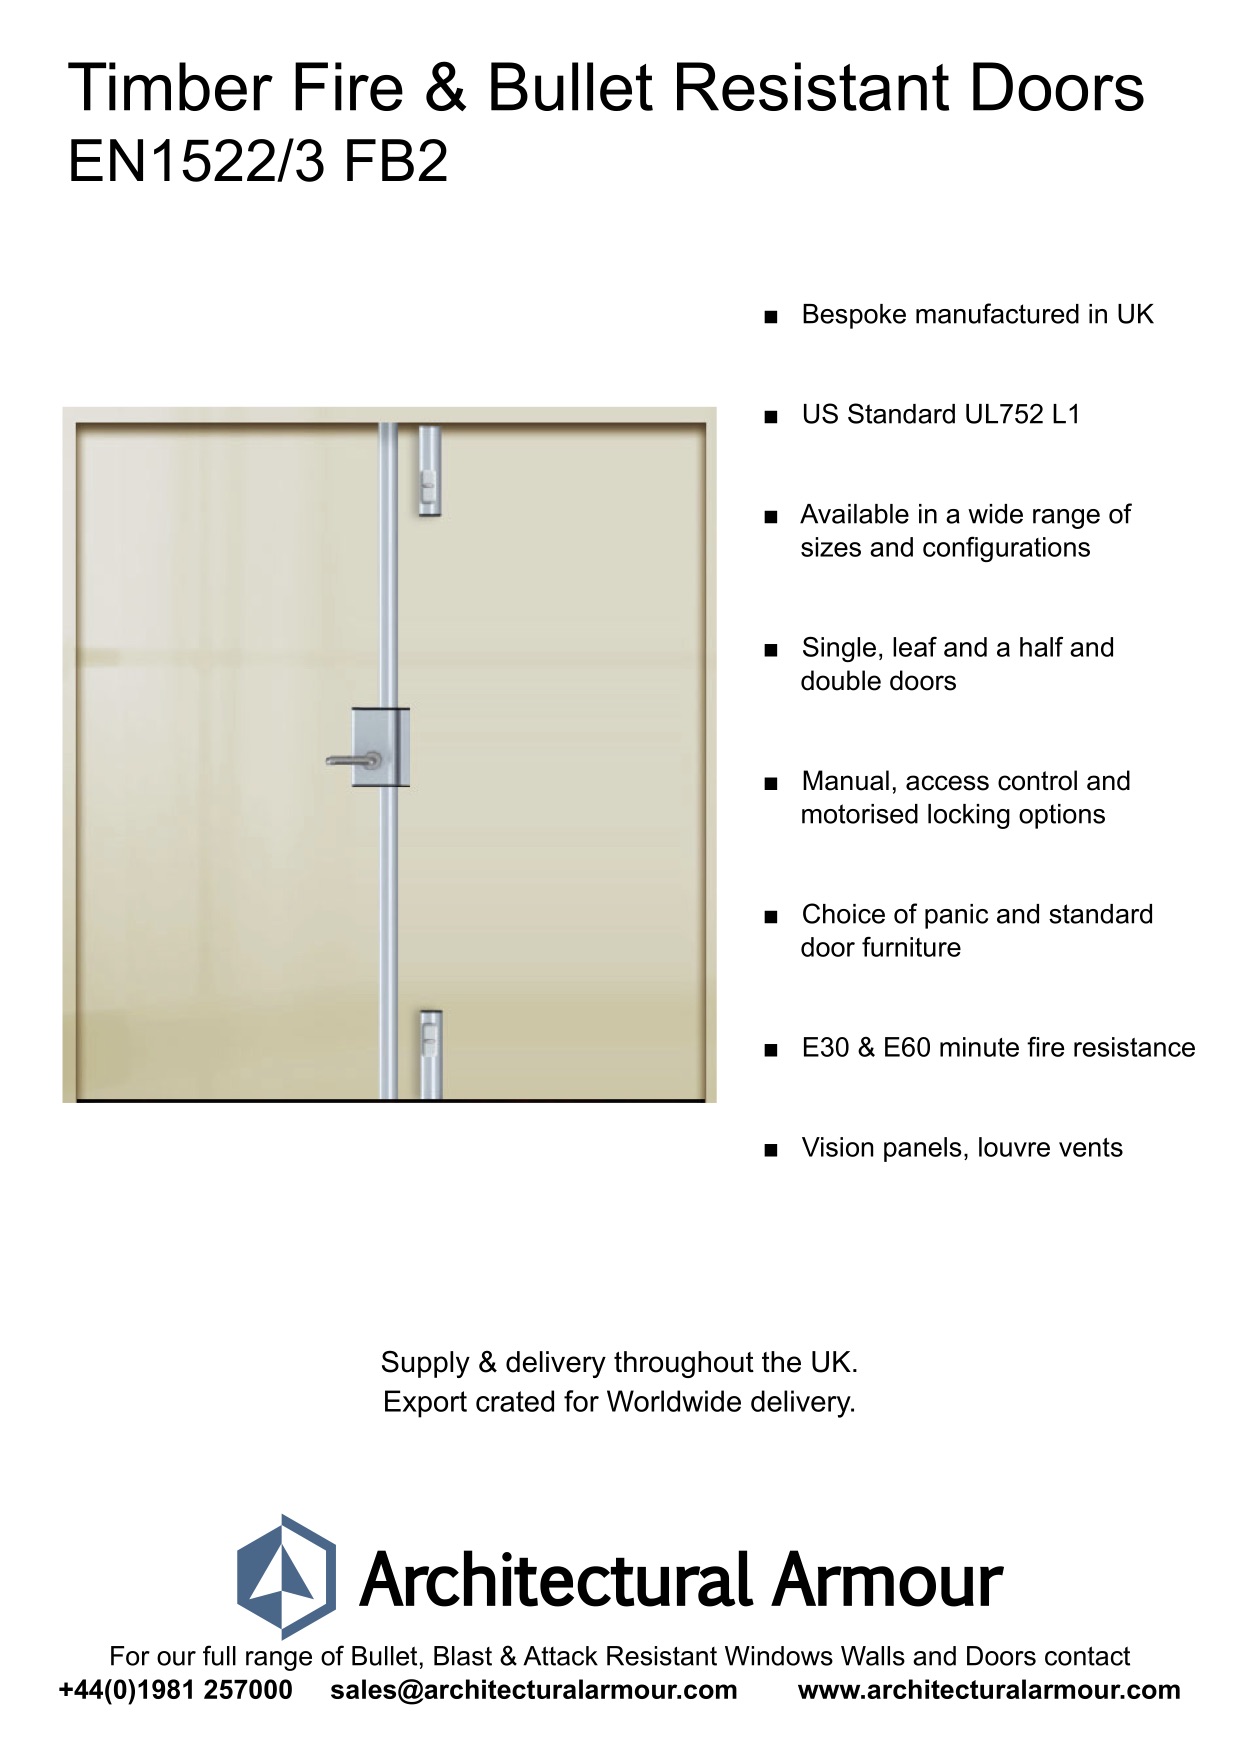 Fire-resistant-and-Bulletproof-Timber-Double-Doors-UK-EN1522-3-FB2